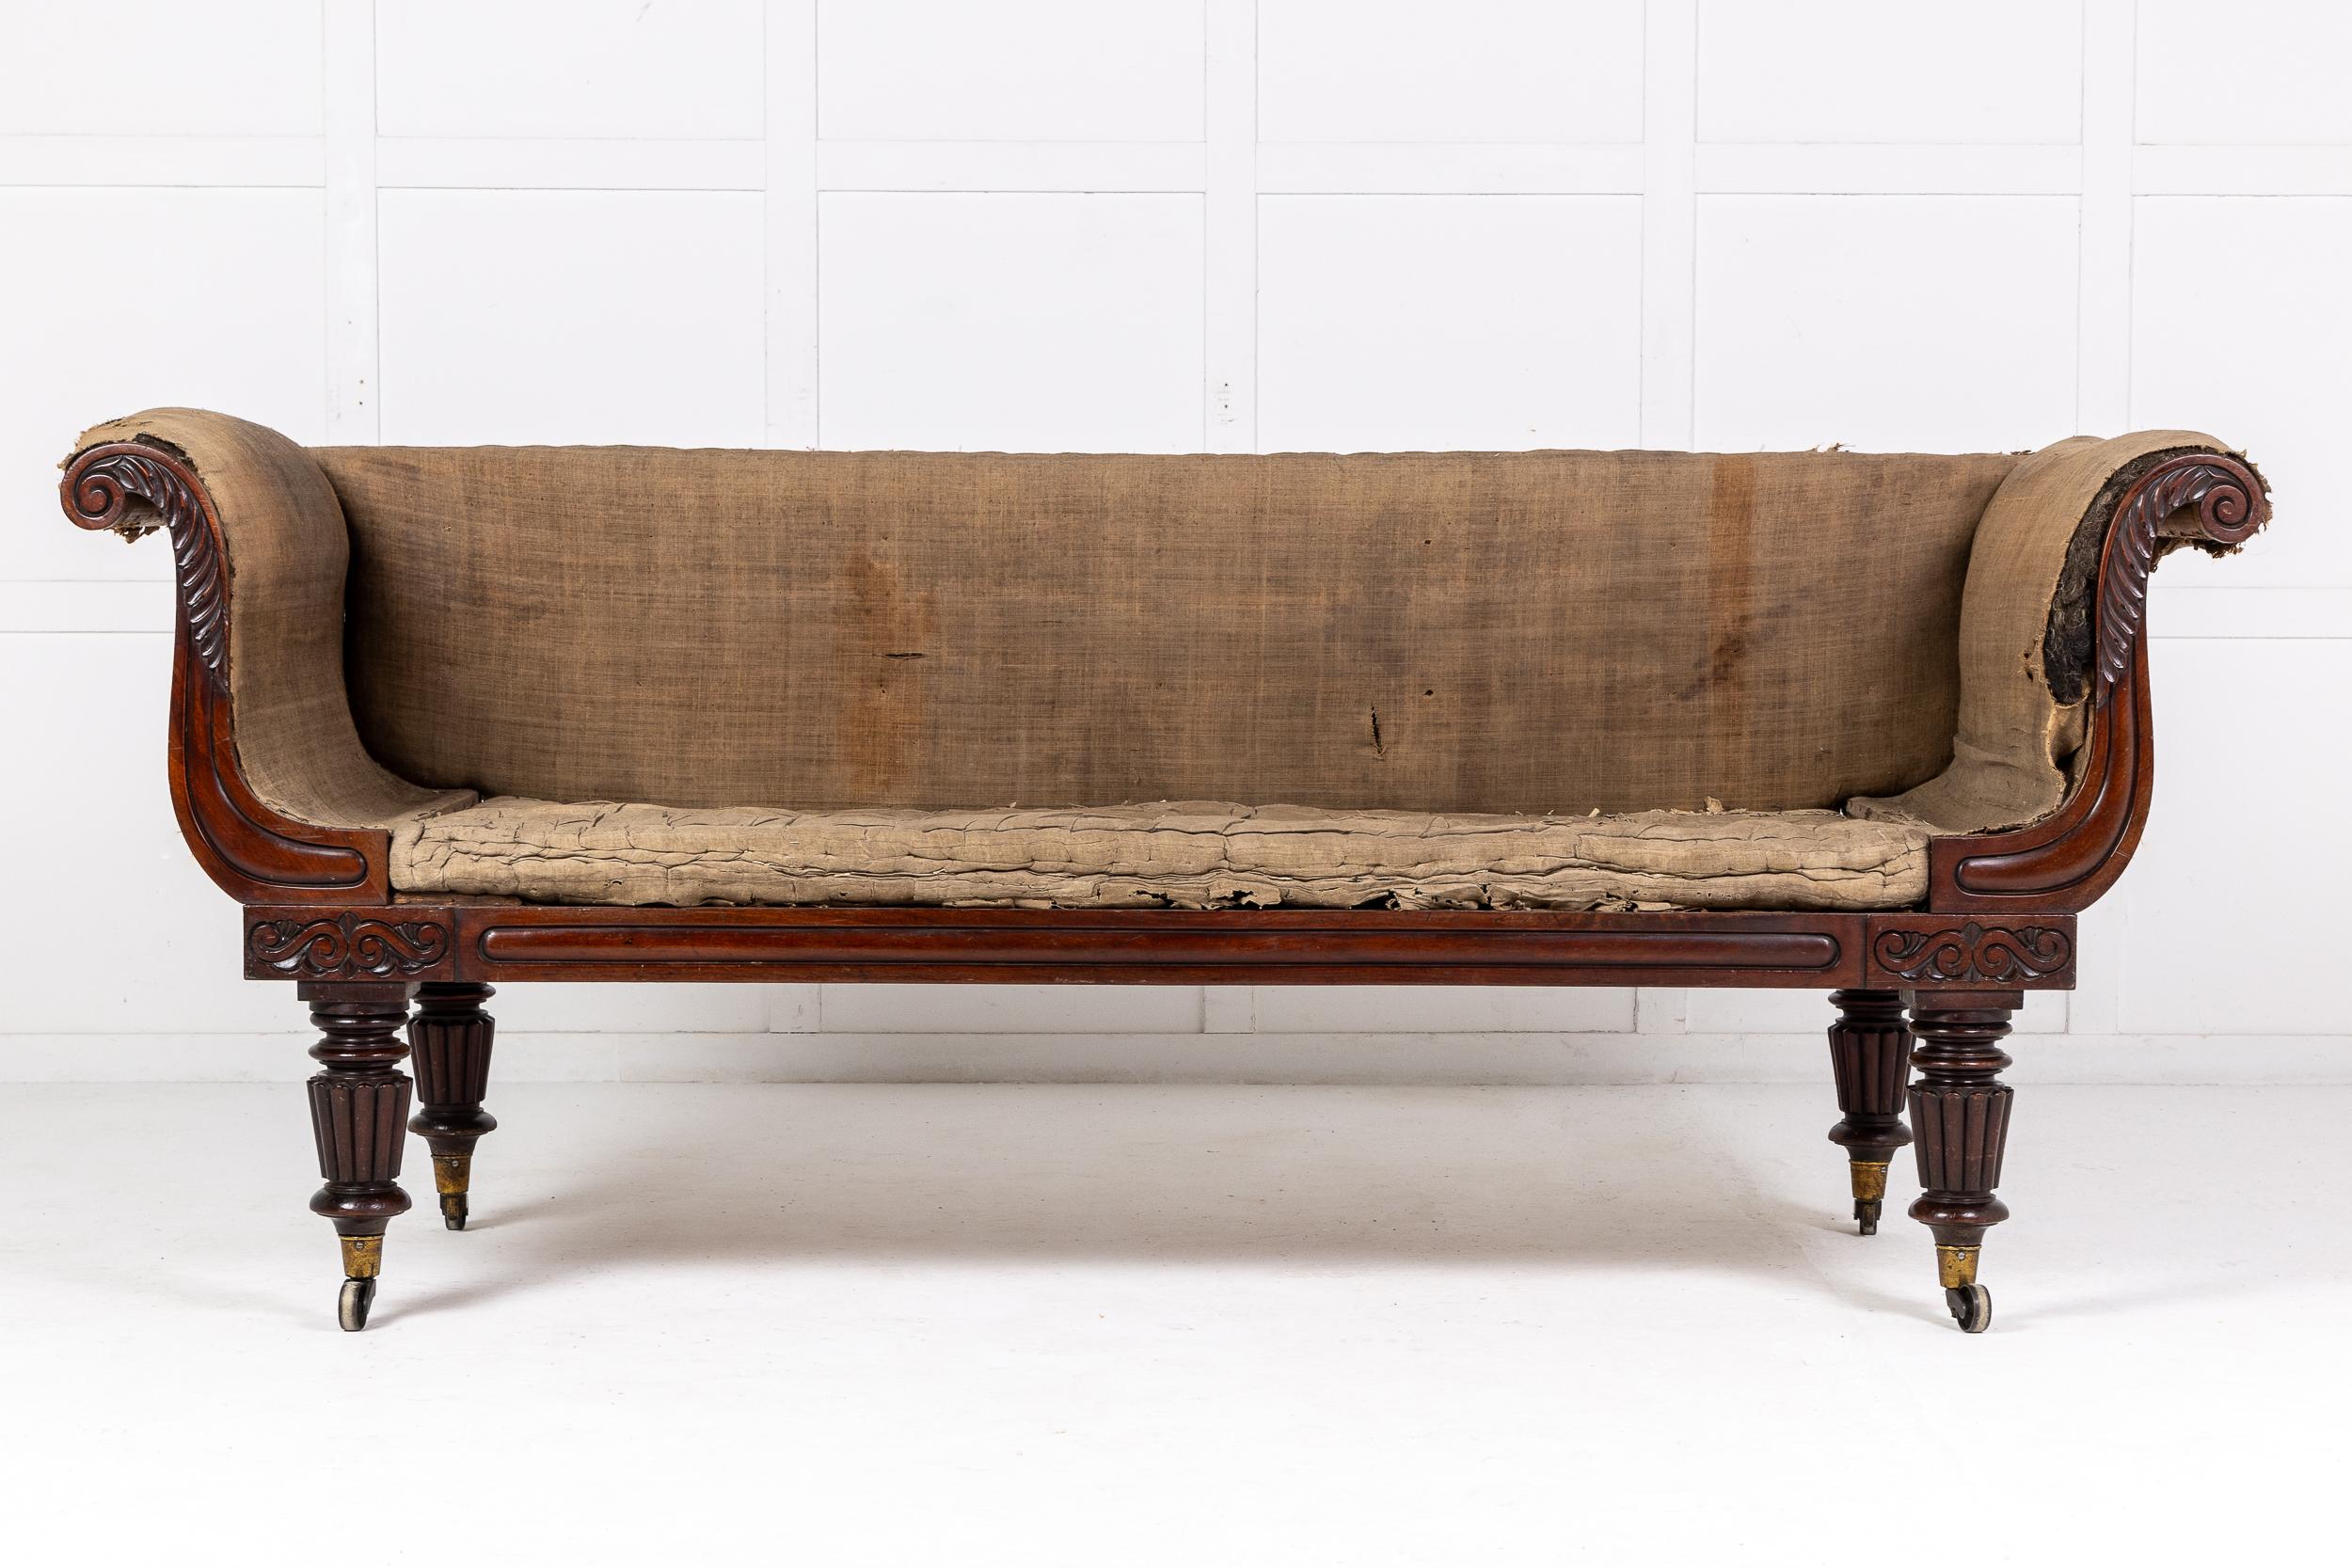 Ein sehr schönes Mahagoni-Sofa aus der späten Regency-Periode in der Manier von Gillows. Circa 1830.

Dieses Möbelstück in Form eines verlängerten Wannensessels wurde aus hochwertigem Mahagoni gefertigt, das nach jahrelangem Gebrauch eine schöne